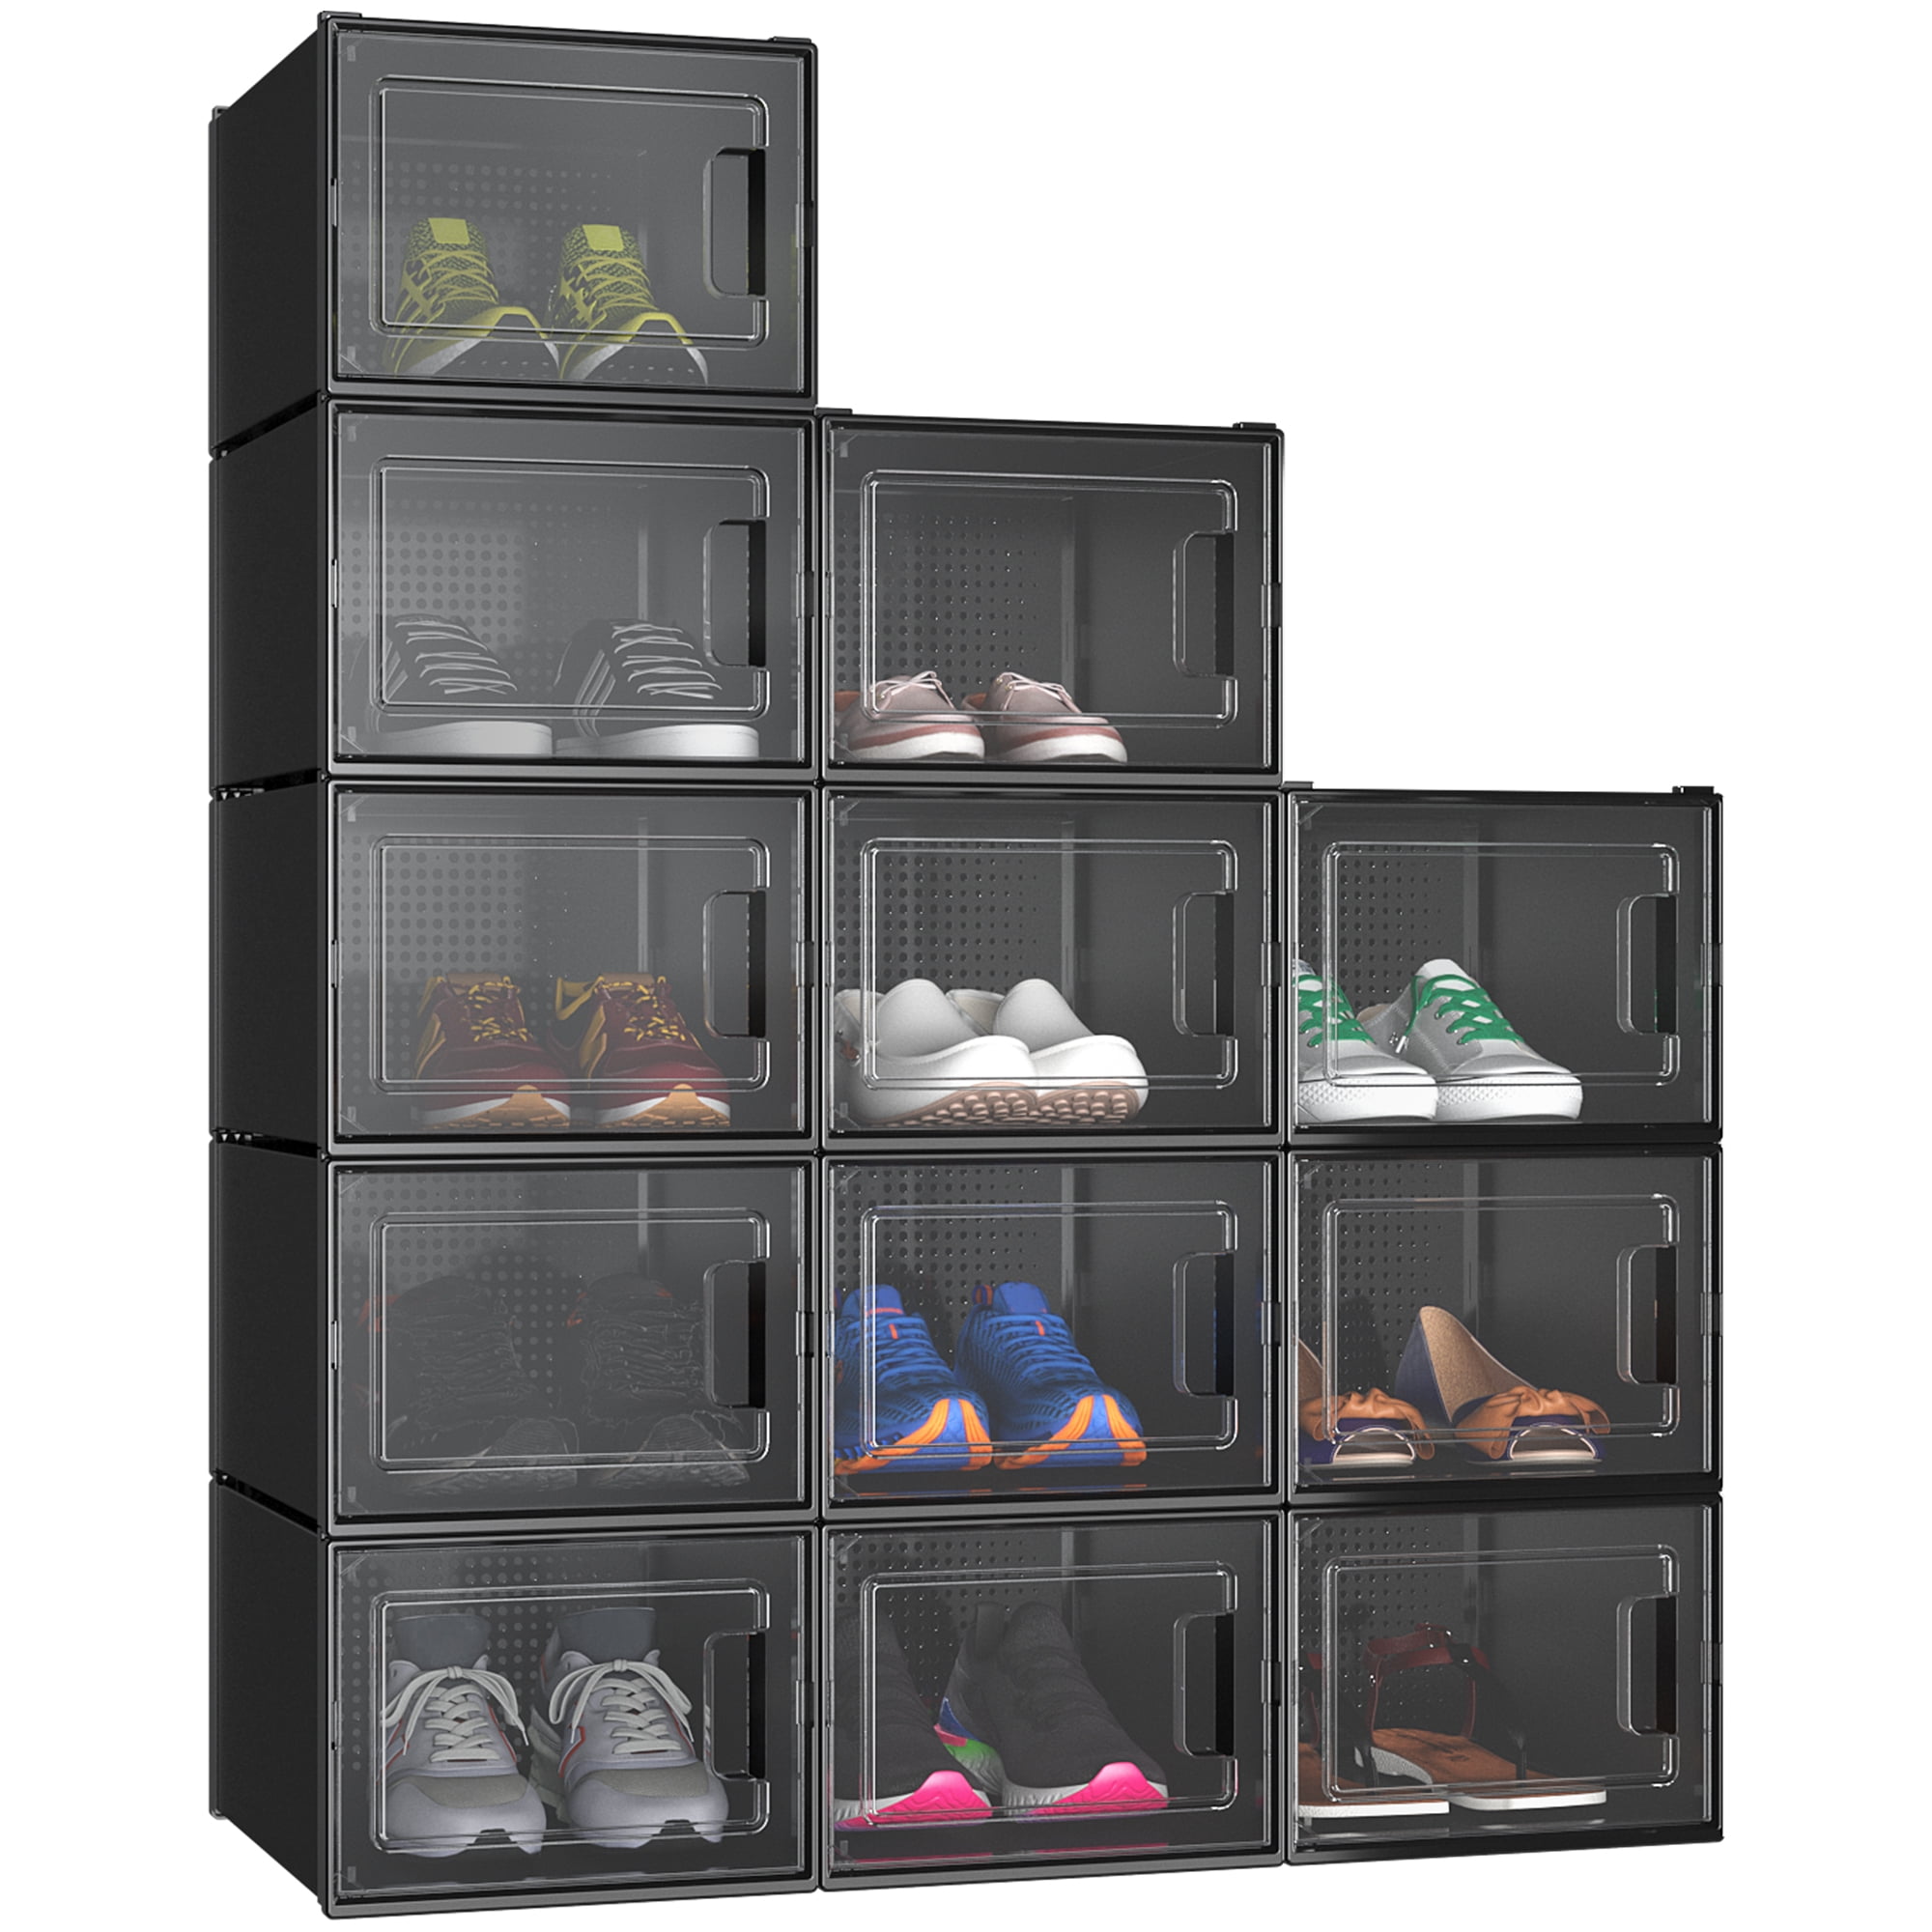 6/12/18PCS Foldable Shoe Storage Box Sneaker Cases Stackable